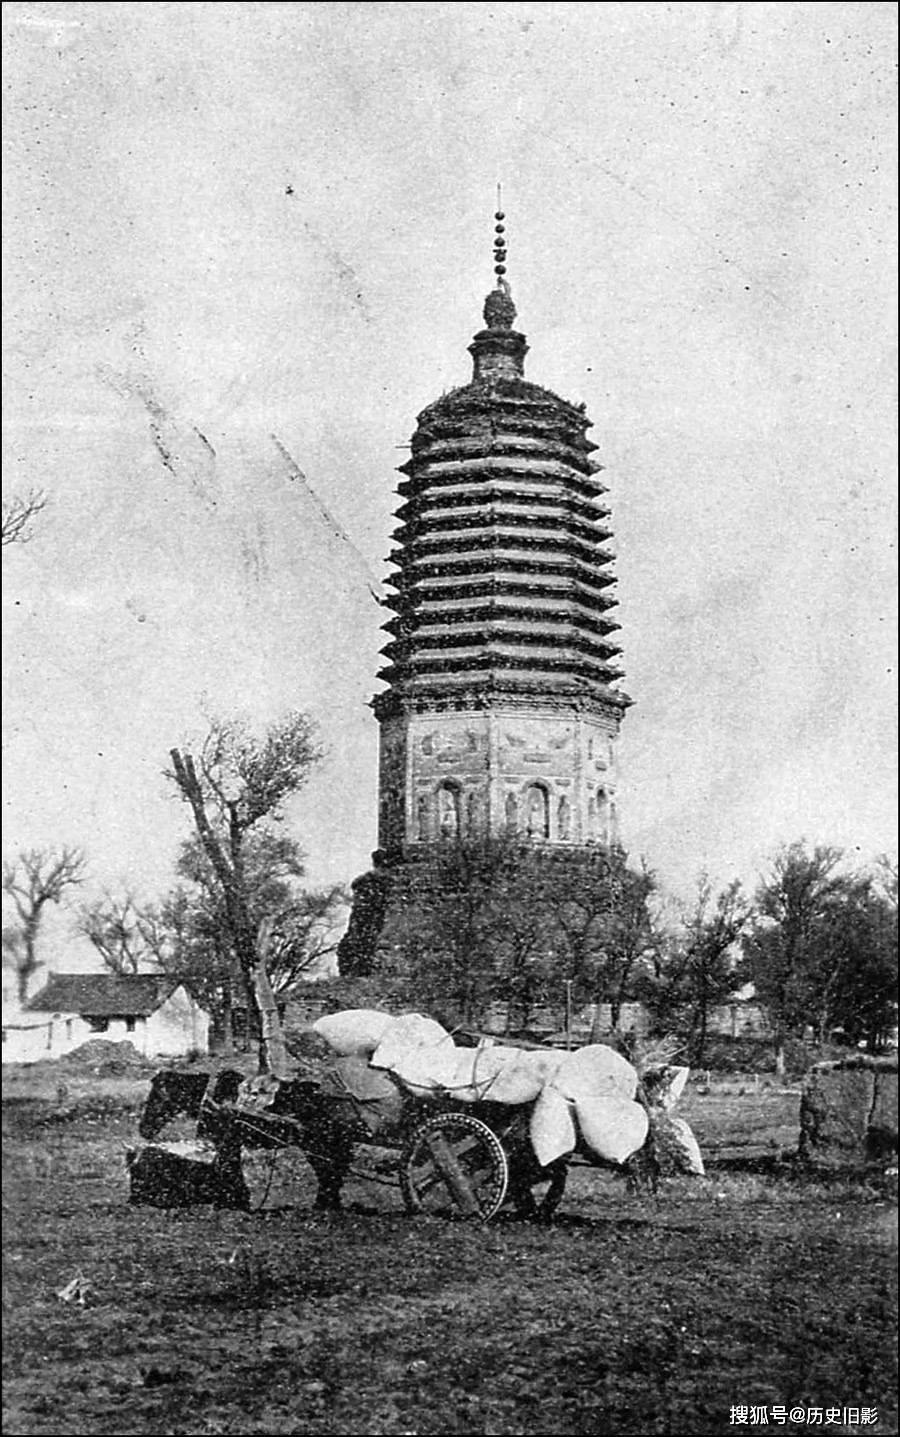 1908年辽宁各城市建筑老照片,辽阳白塔与孔子庙